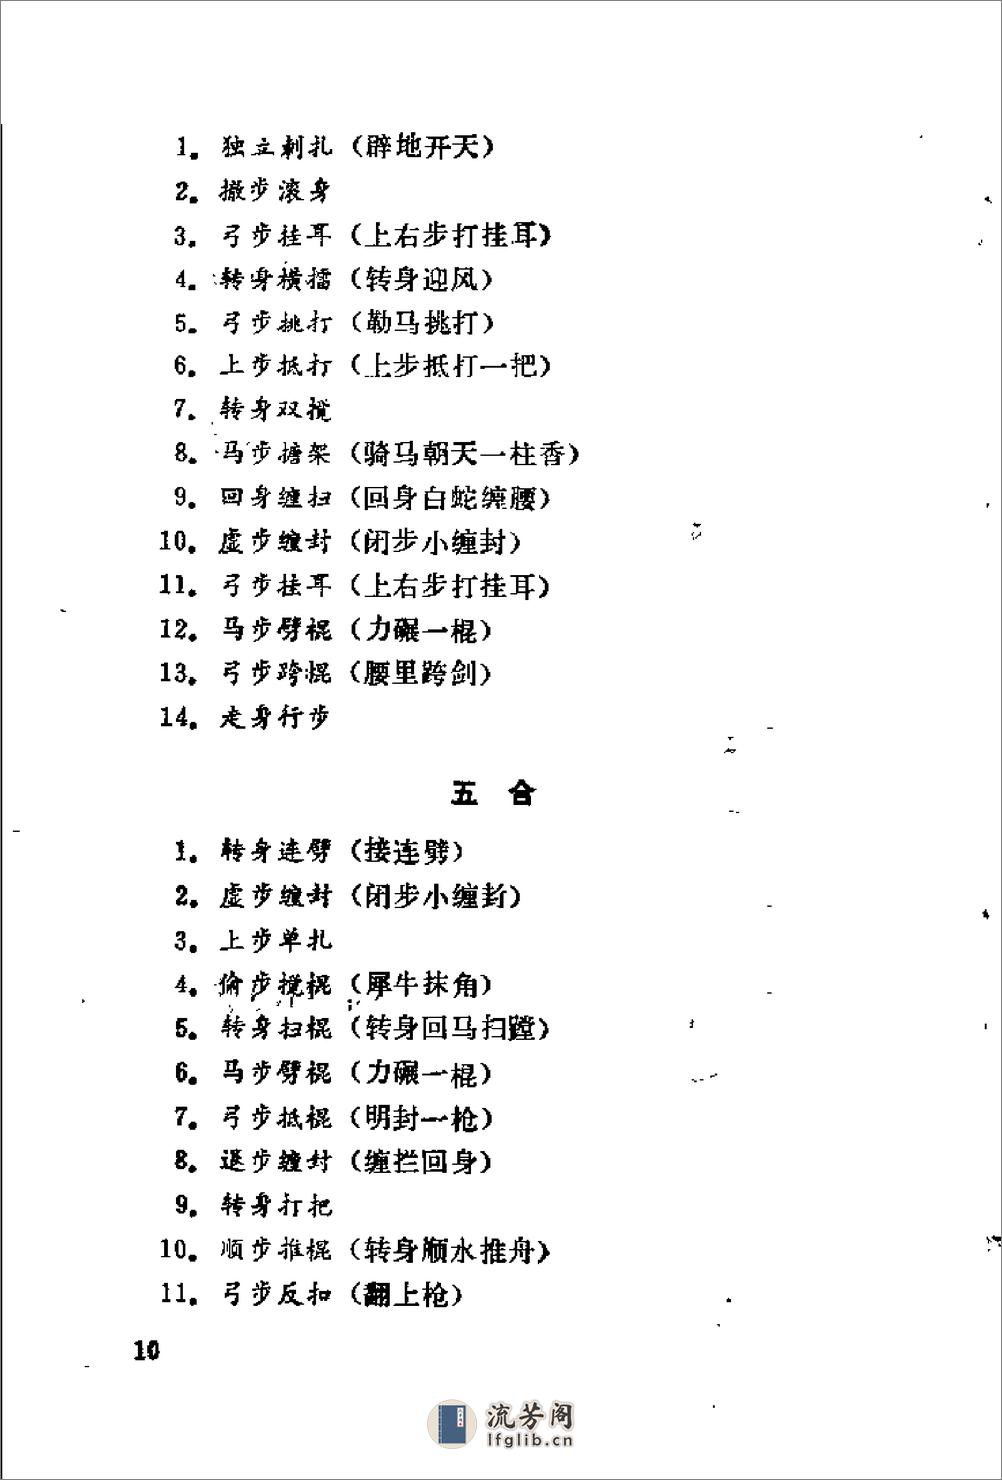 《六合棍》陈若萍 - 第12页预览图